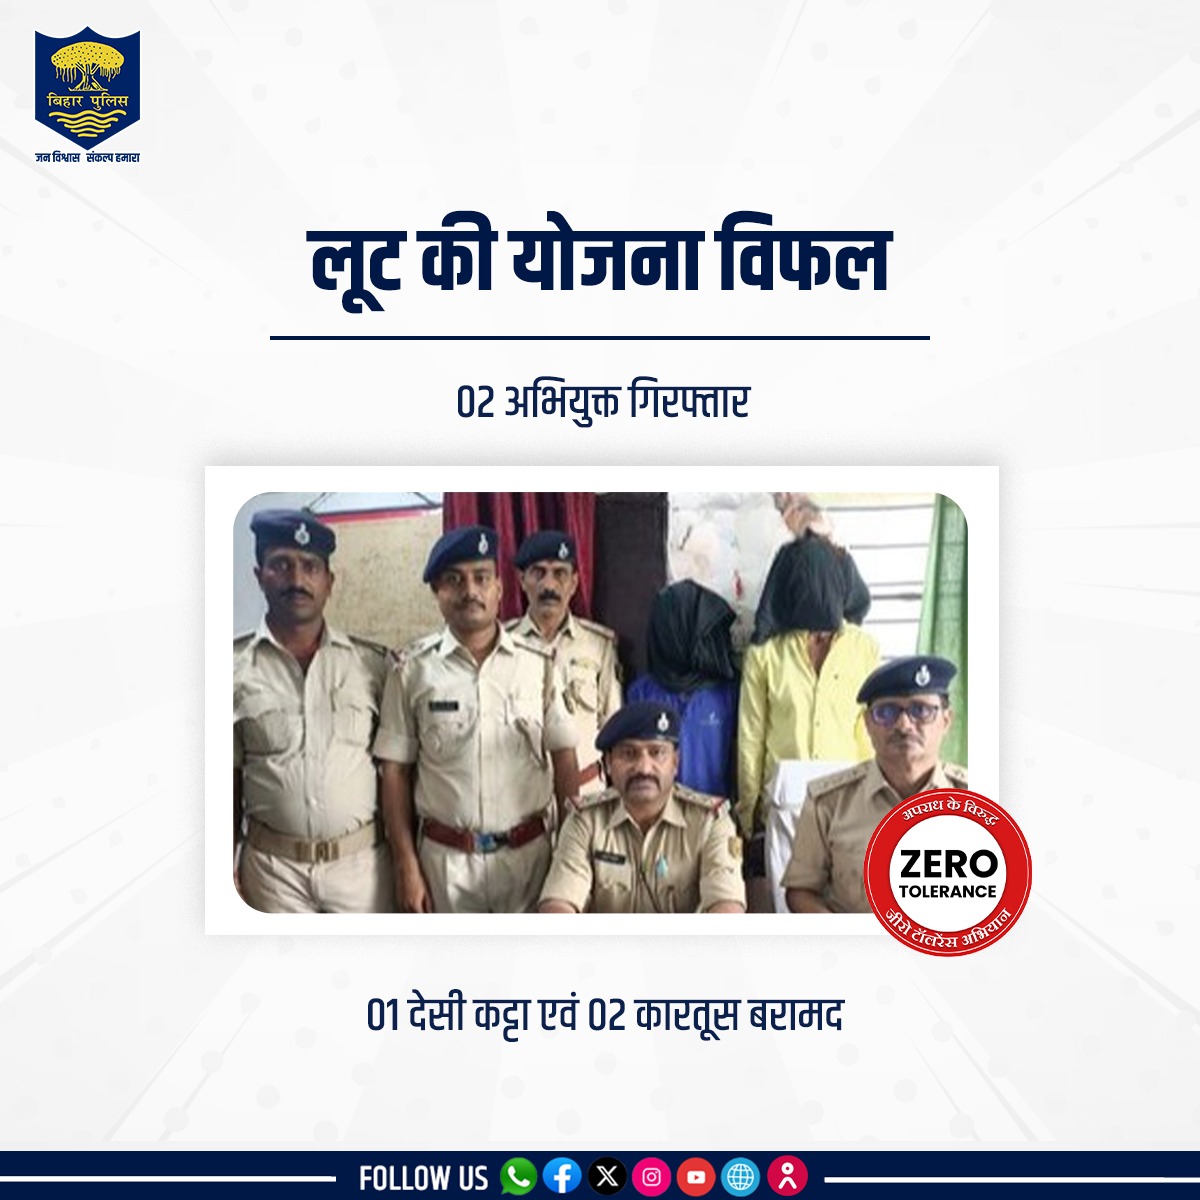 #BiharPolice ने पटना जिले के धनरूआ थाना क्षेत्र से लूट की योजना बना रहे दो अभियुक्तों को  01 देसी कट्टा एवं 02 कारतूस के साथ गिरफ्तार किया।
.
.
#HainTaiyaarHum #Bihar